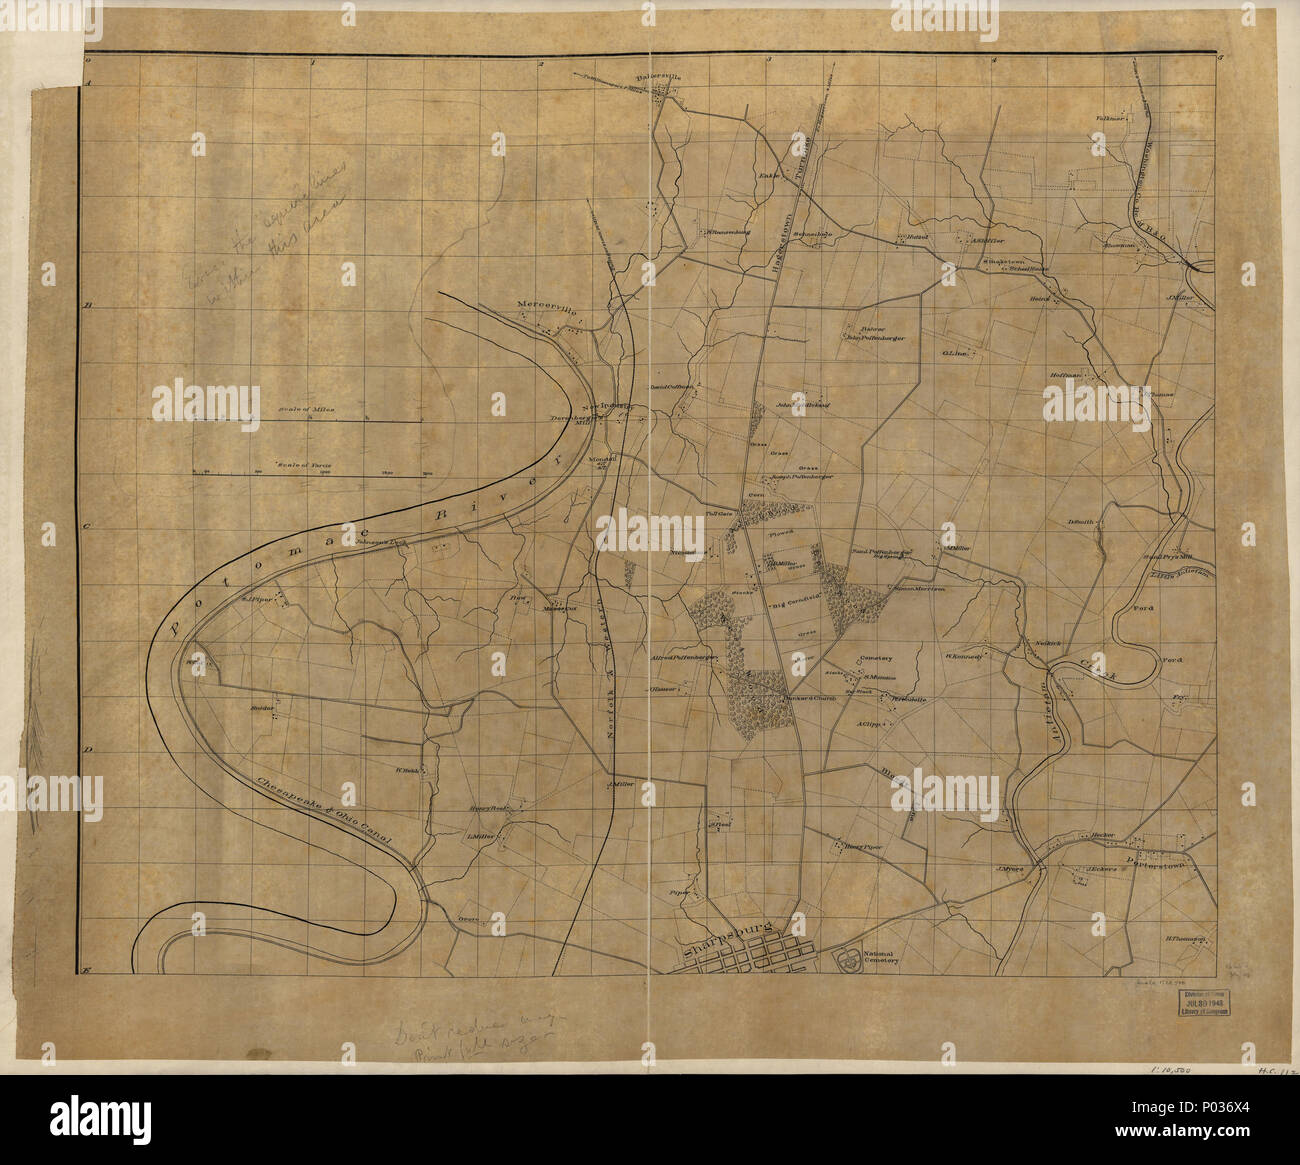 13 (Nordwesten, oder Nein. 1 Blatt der vorläufigen Karte von Antietam (sharpsburg) Battlefield). LOC 2005625020 Stockfoto